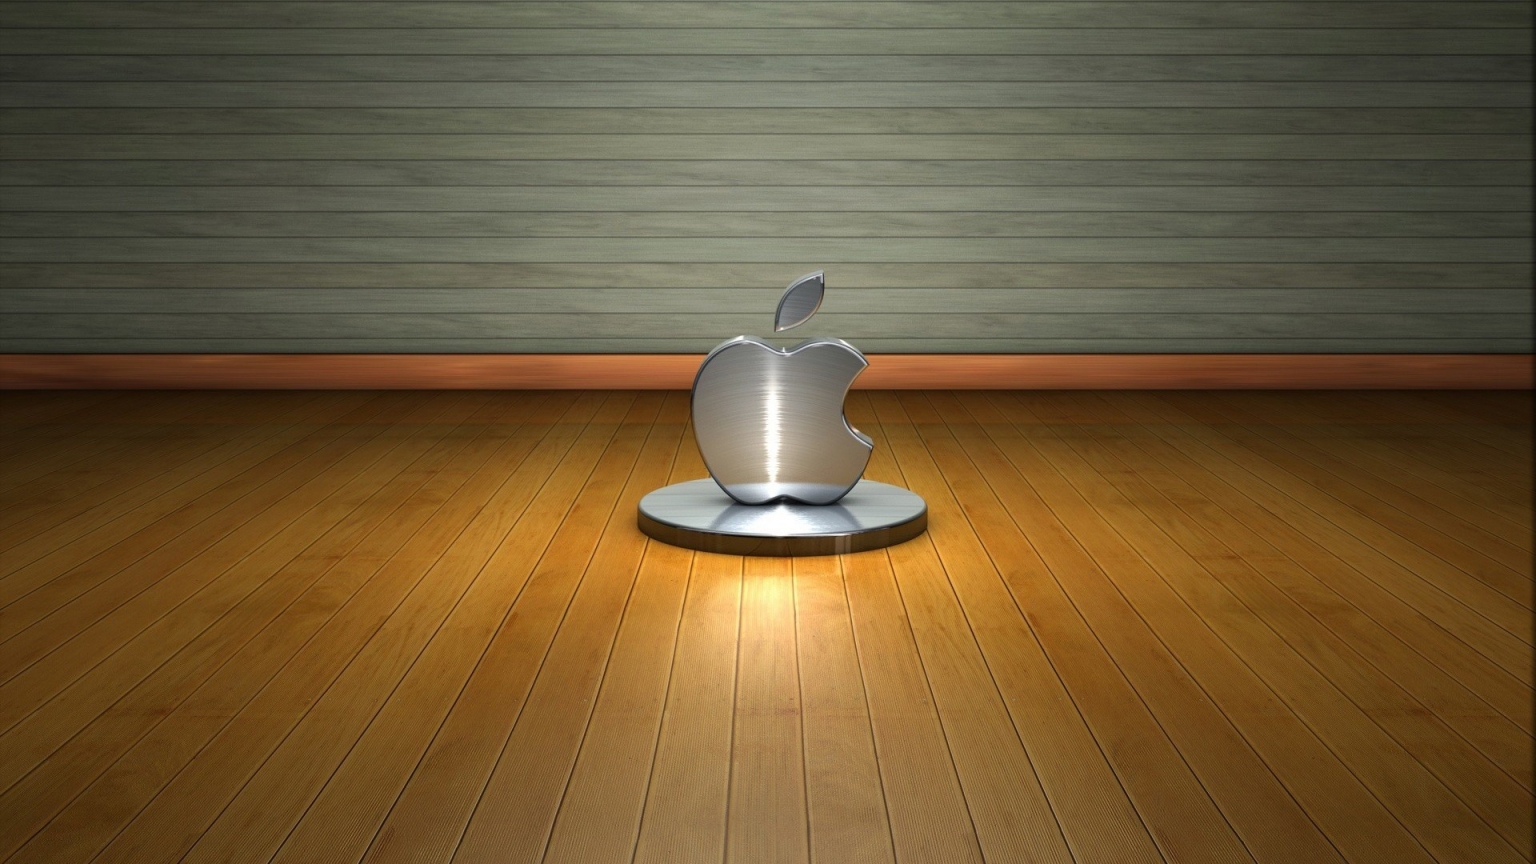 3D Apple Logo for 1536 x 864 HDTV resolution